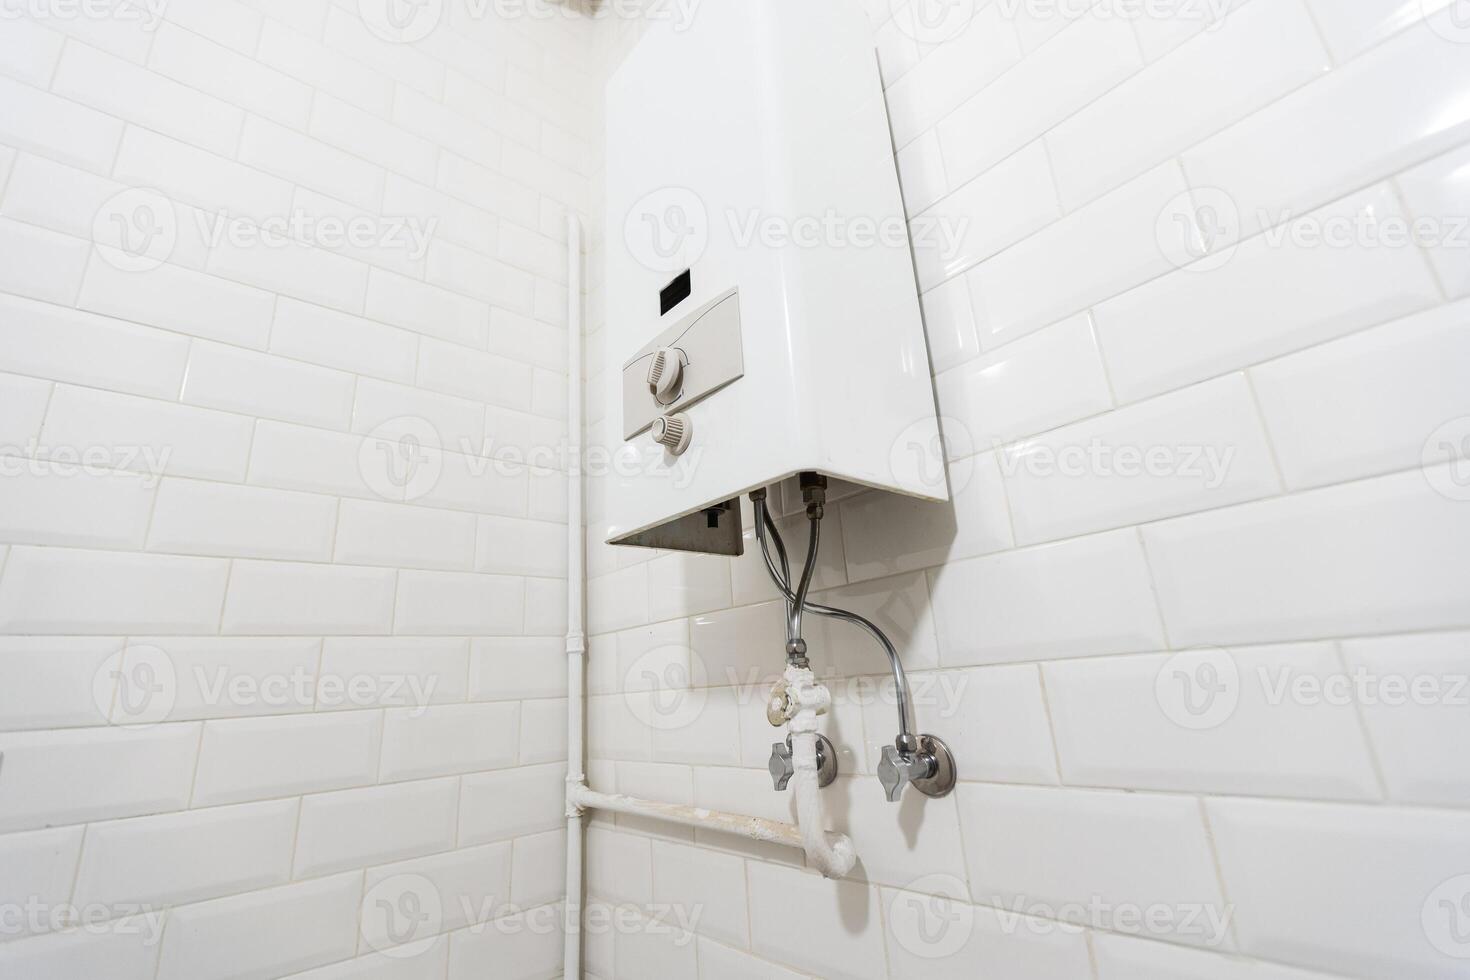 gebroken modern water gas- kachel De volgende naar douche cabine binnen elegant schoon badkamer interieur. foto